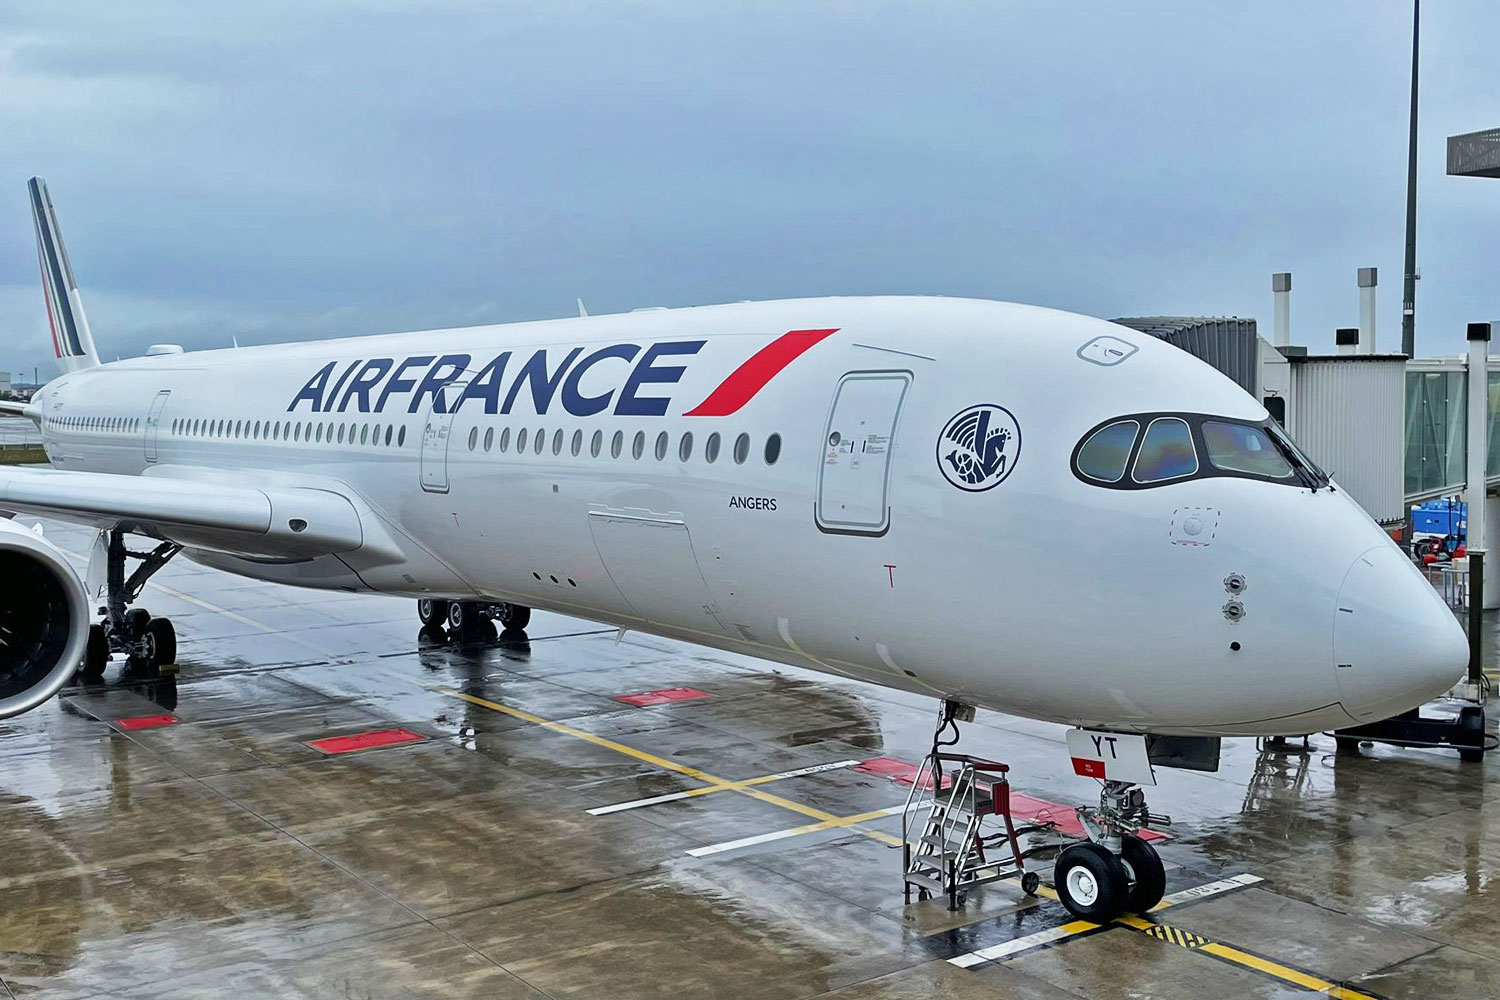 Air France A350 fleet reaches 20 aircraft - Air Data News